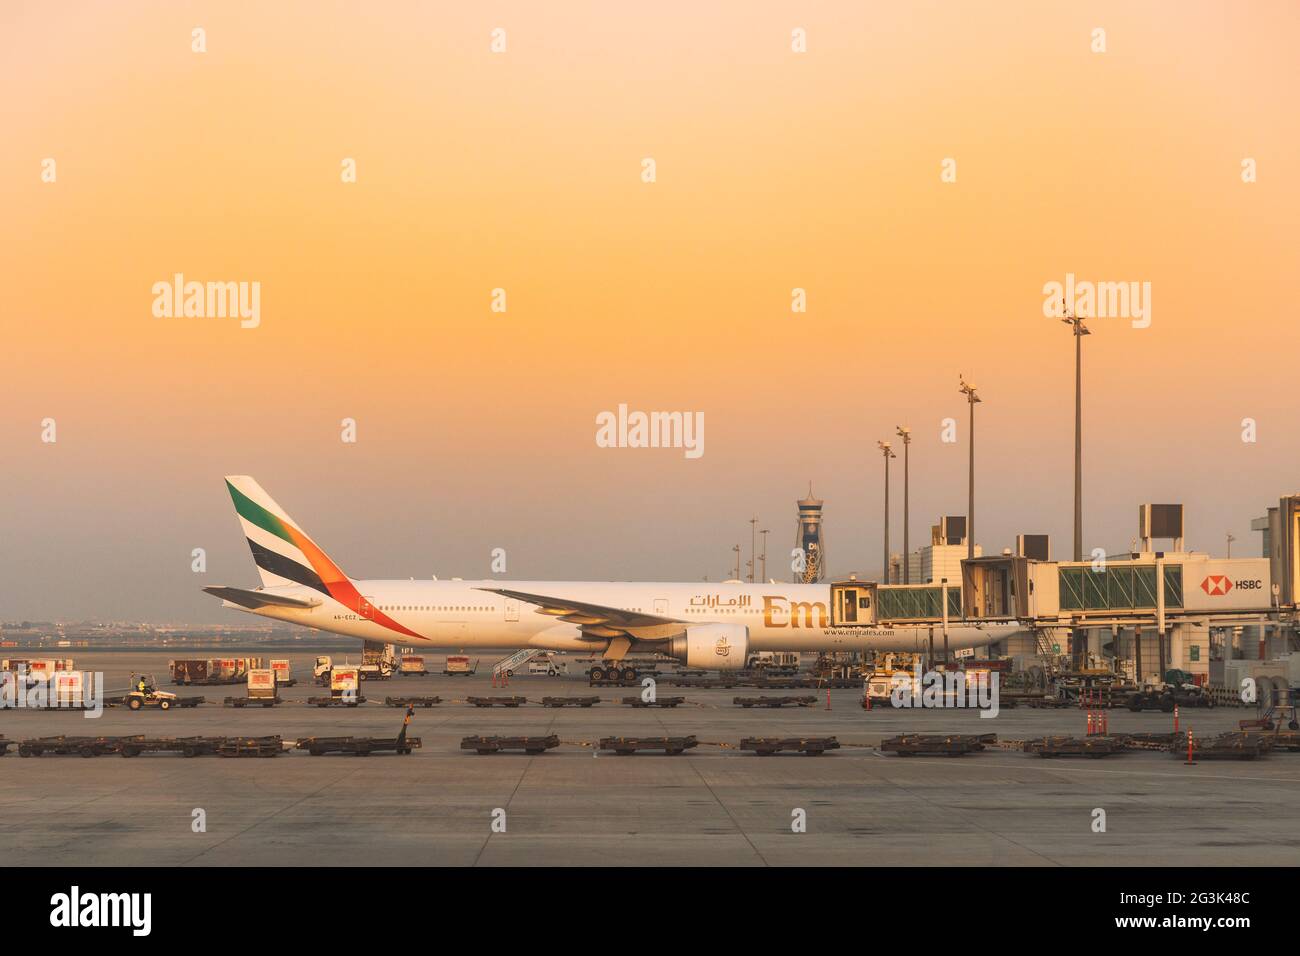 Airline Emirates plane Stand à l'aéroport de Dubaï. Dubaï, Émirats arabes Unis Banque D'Images